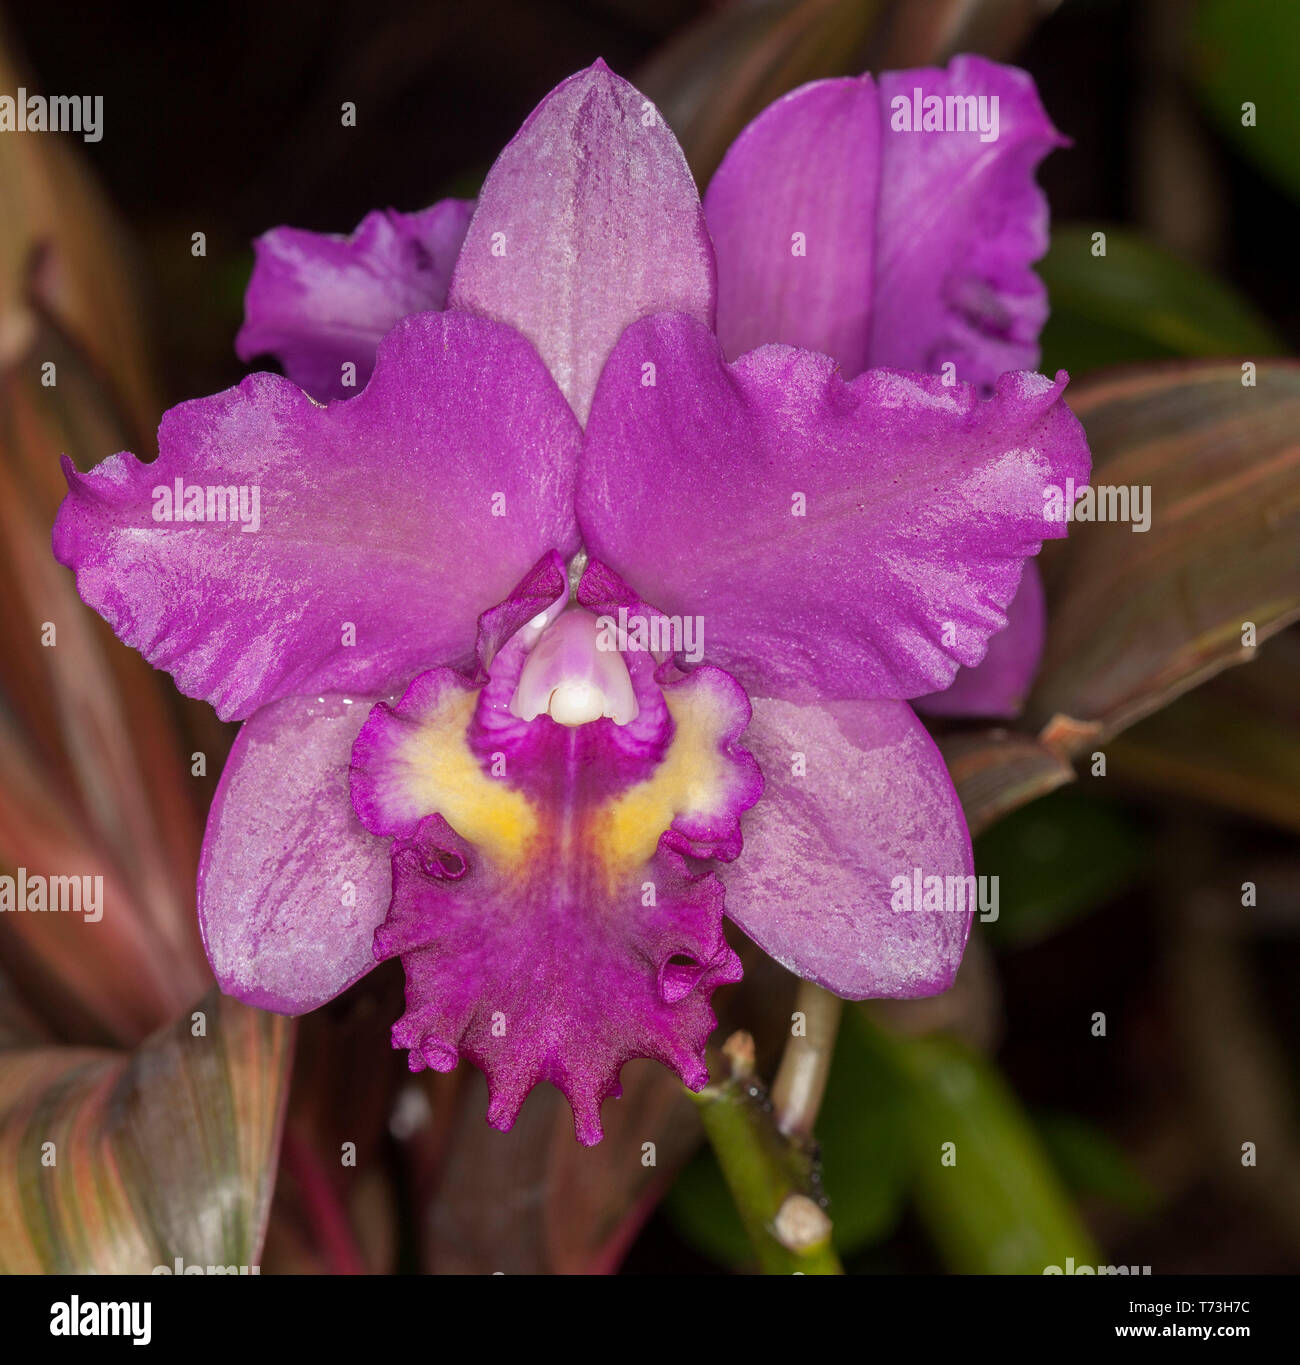 Spektakuläre violett/rote Orchidee, Cattleya Narooma x Täuschung Drop' Kupfer und Spots' auf dunklem Hintergrund Stockfoto